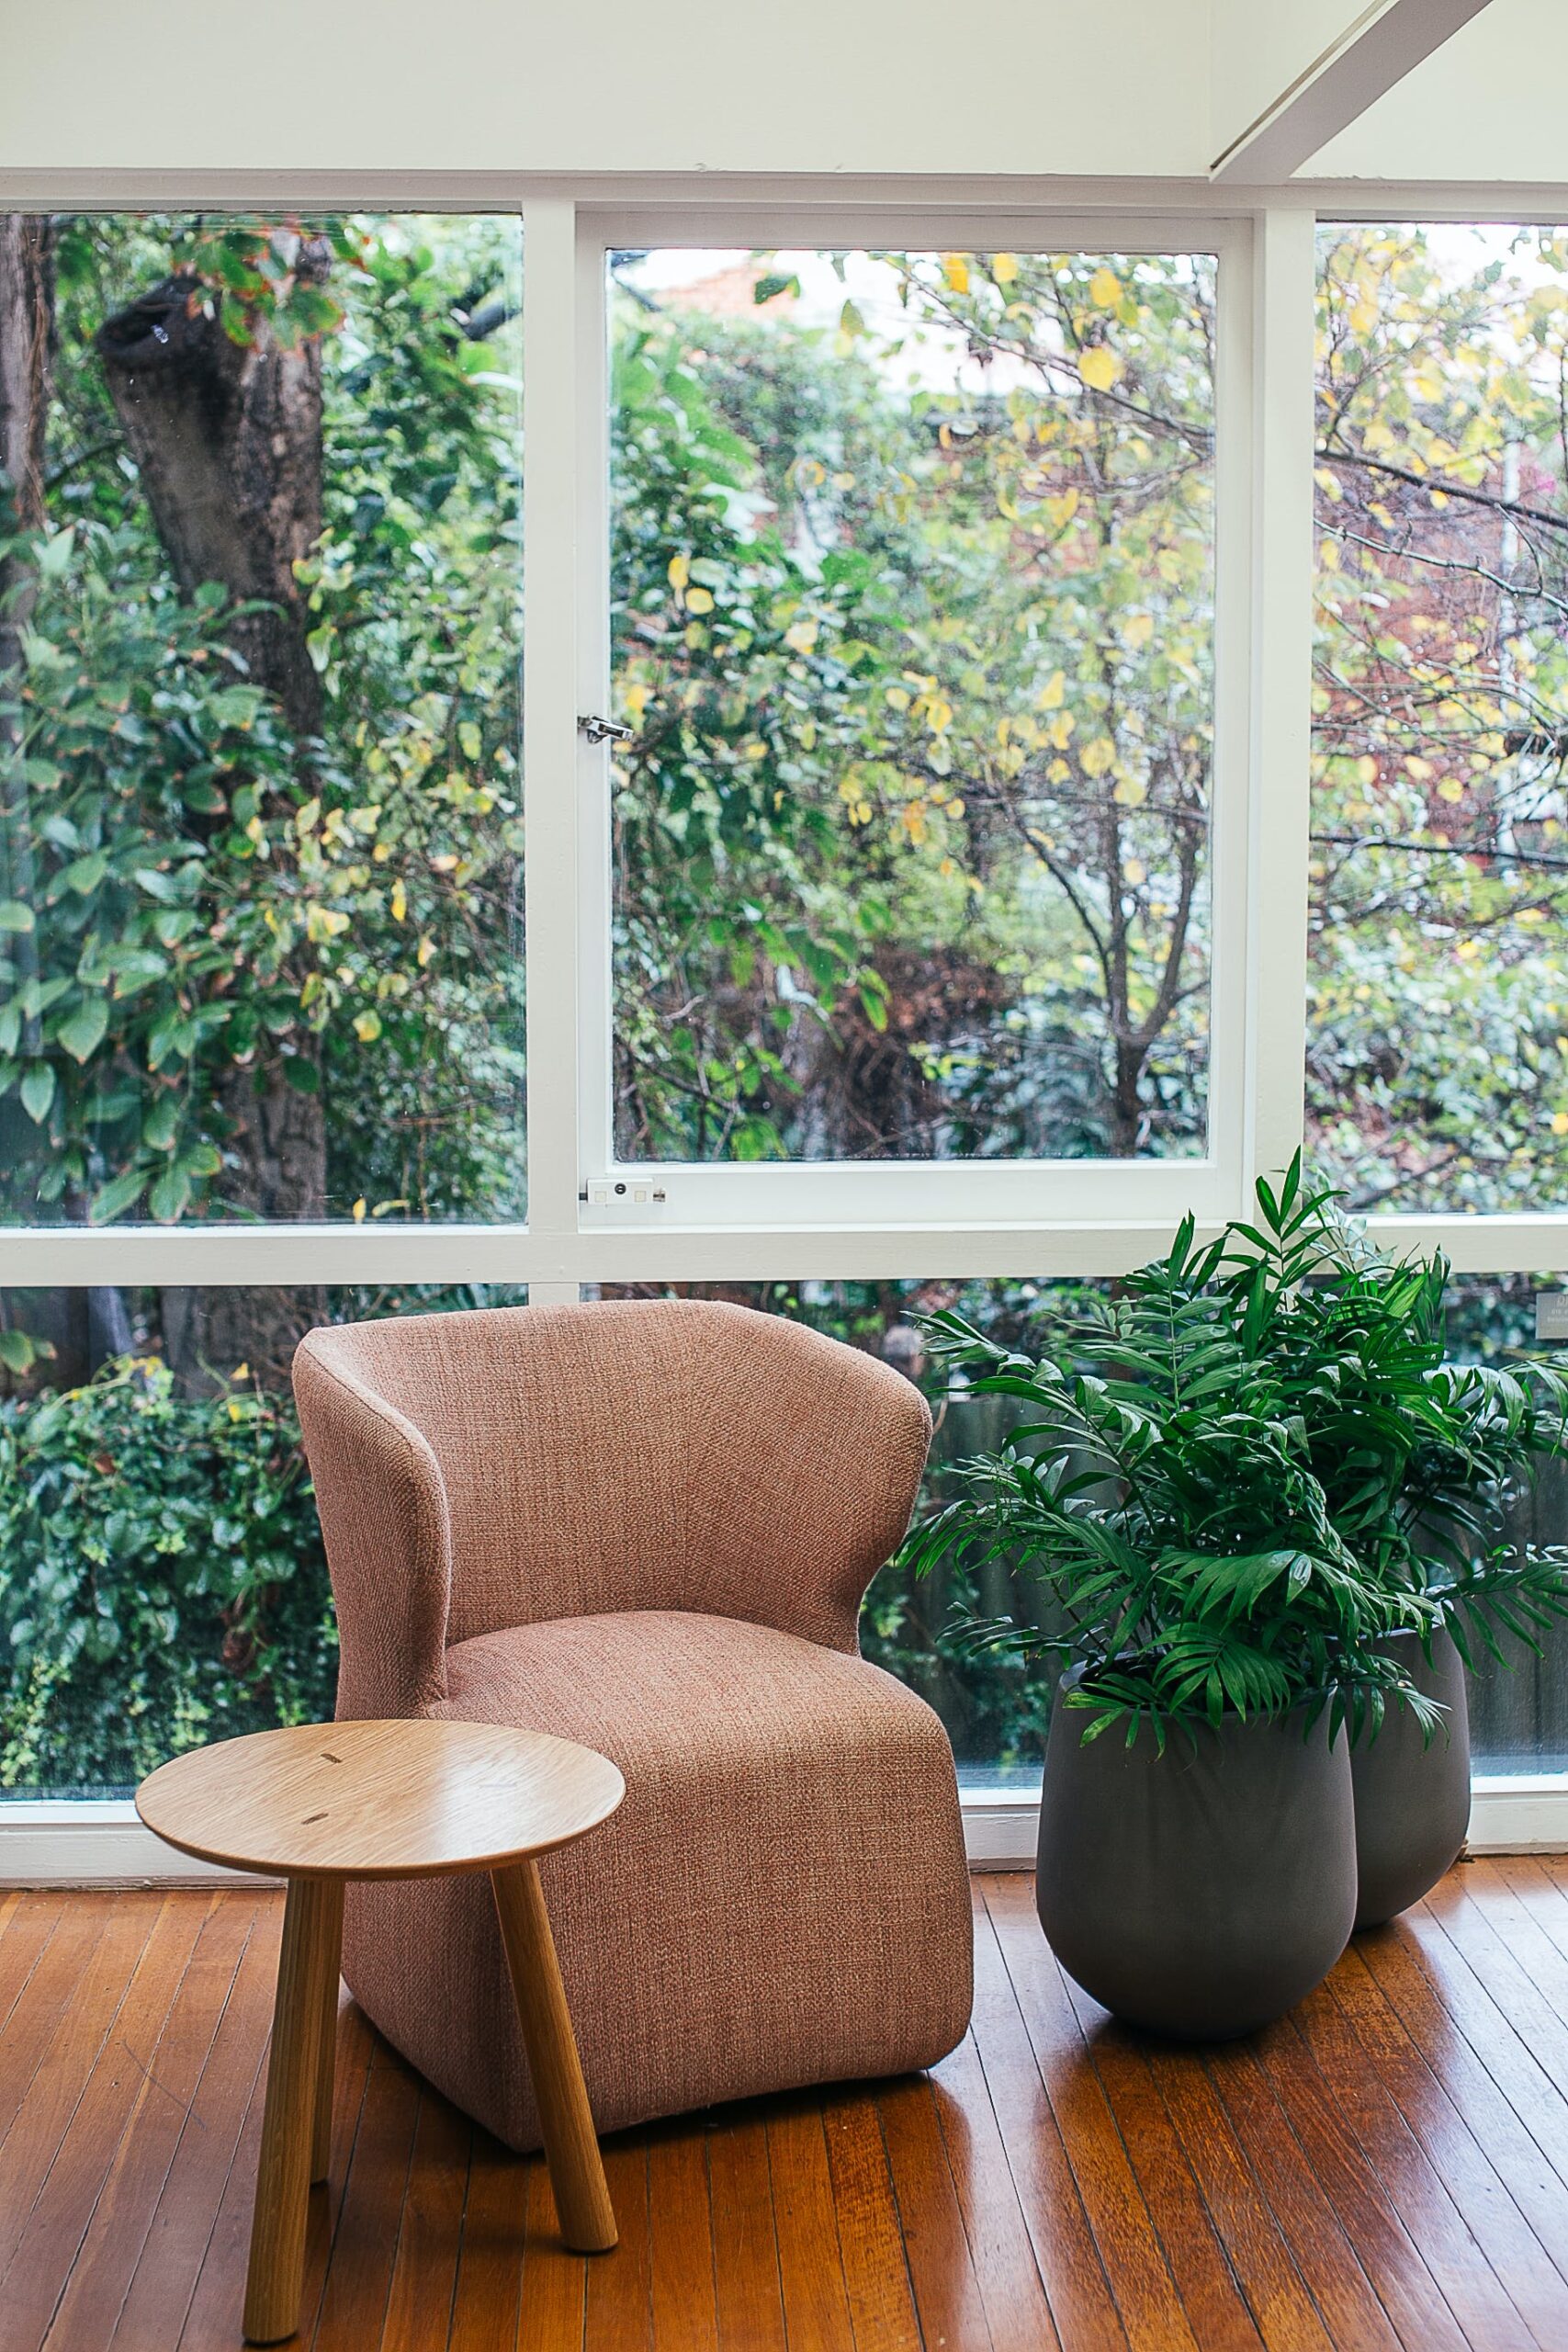 dans une veranda, avec de grandes baies vitrées permettant une vie sur un jardin, une plante tropicale est posée près d'un fauteuil et d'une table basse